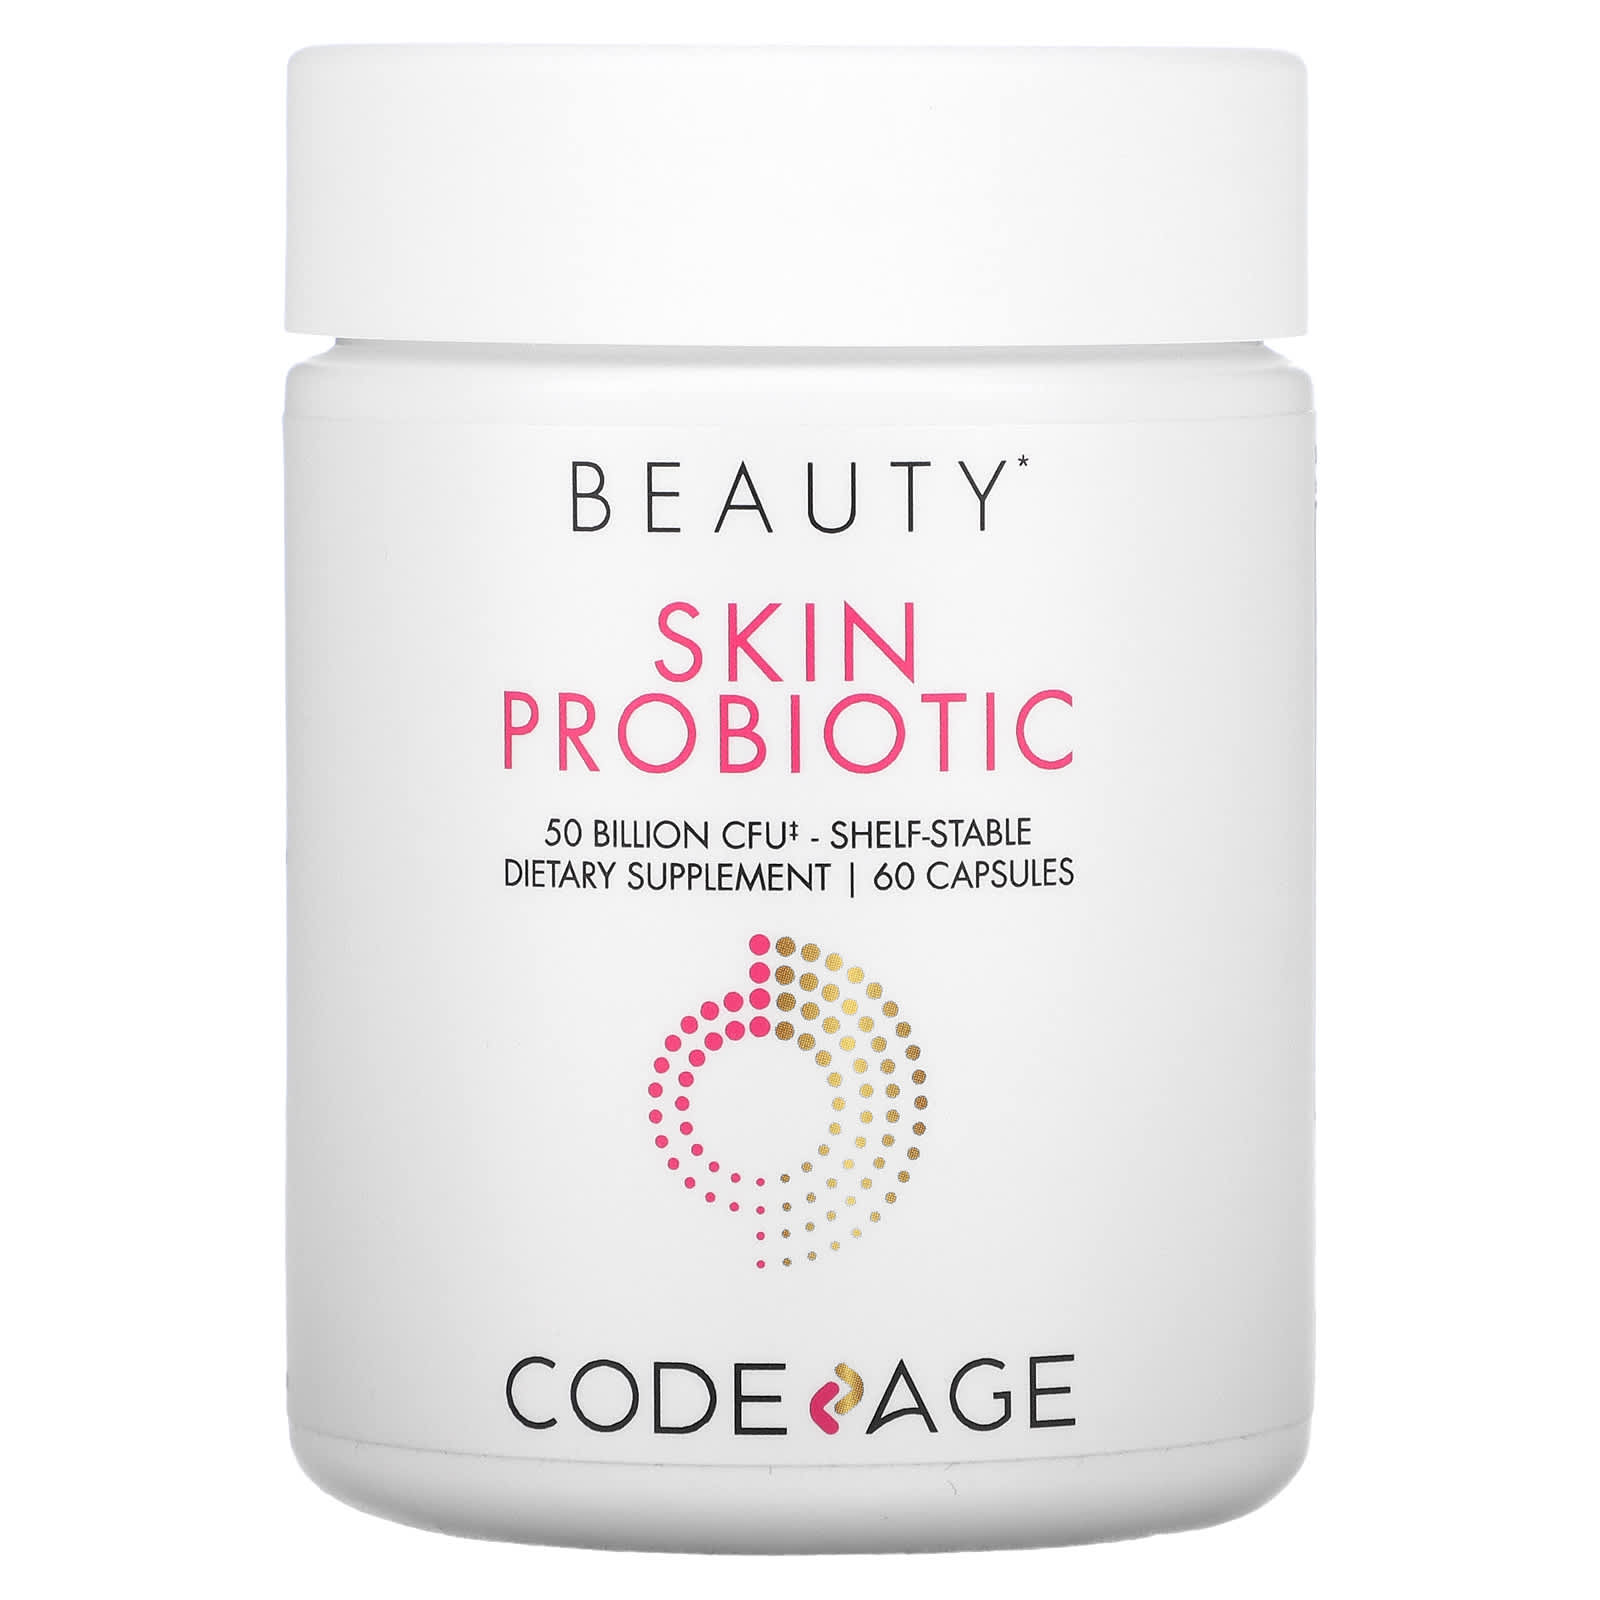 Пробиотик Codeage для кожи длительного хранения, 60 капсул codeage пробиотик для кожи длительного хранения 50 млрд кое 60 капсул